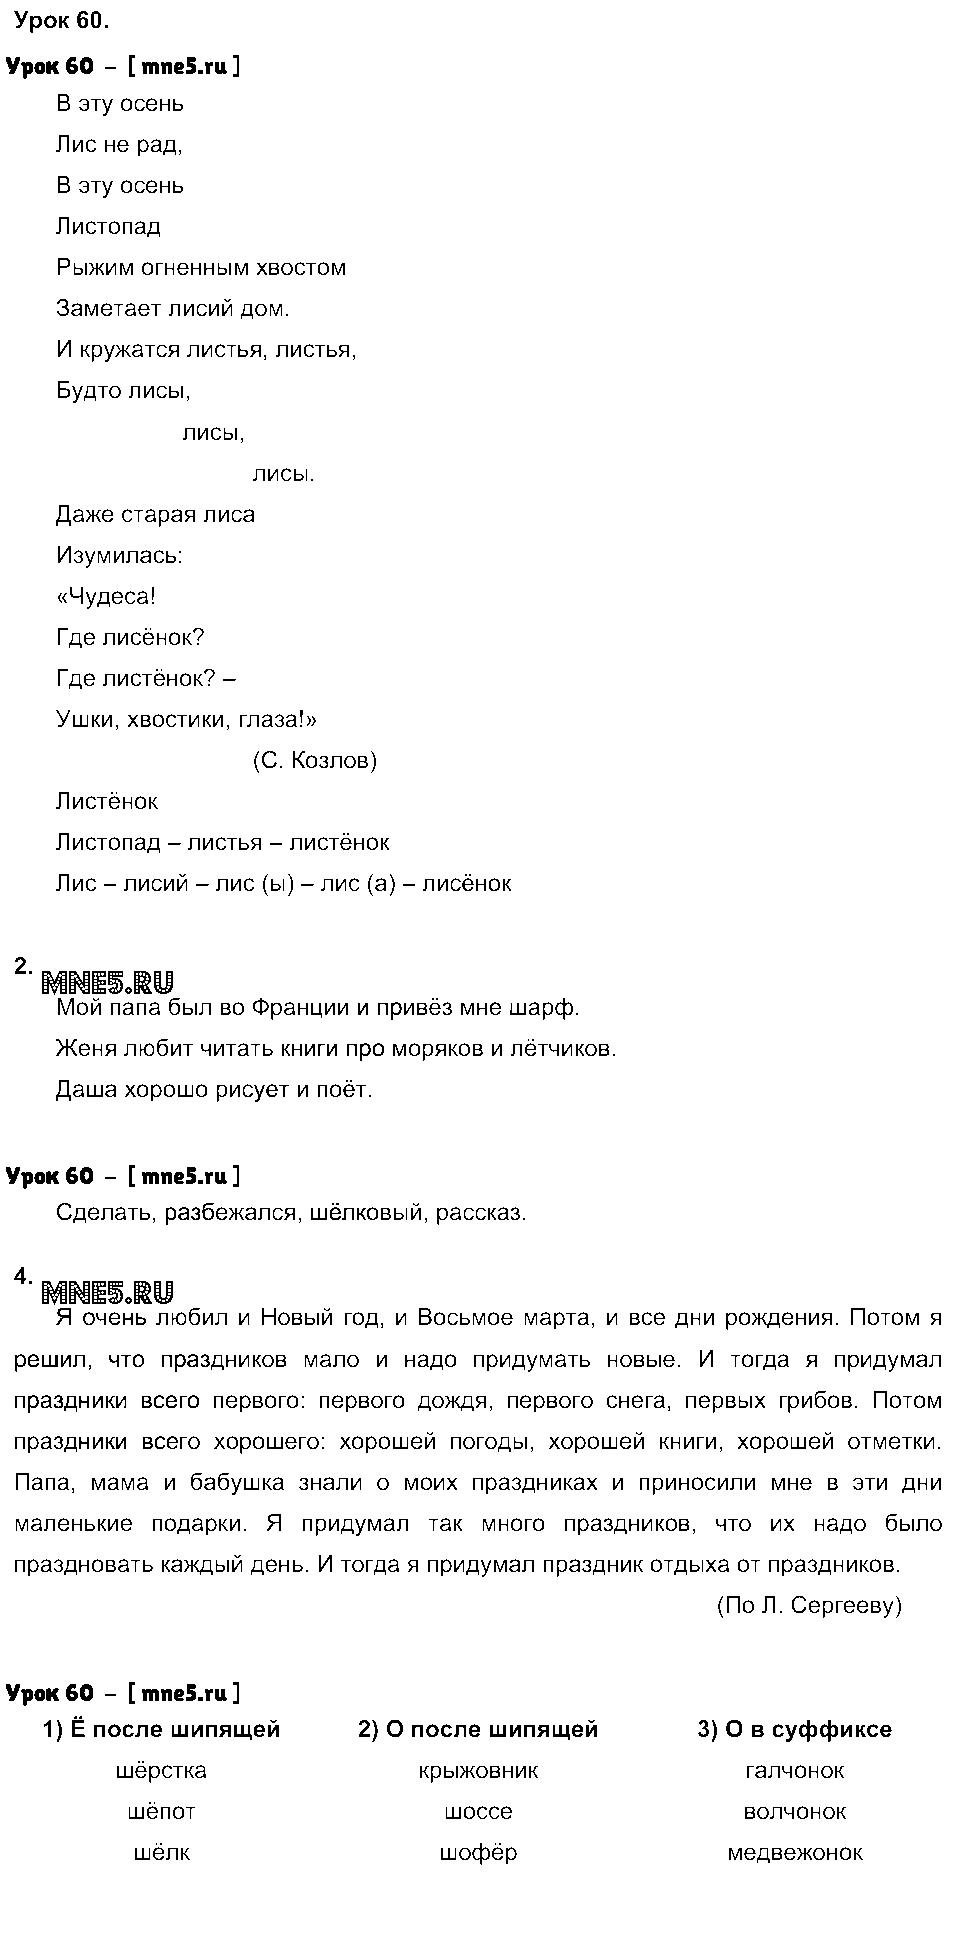 ГДЗ Русский язык 3 класс - Урок 60